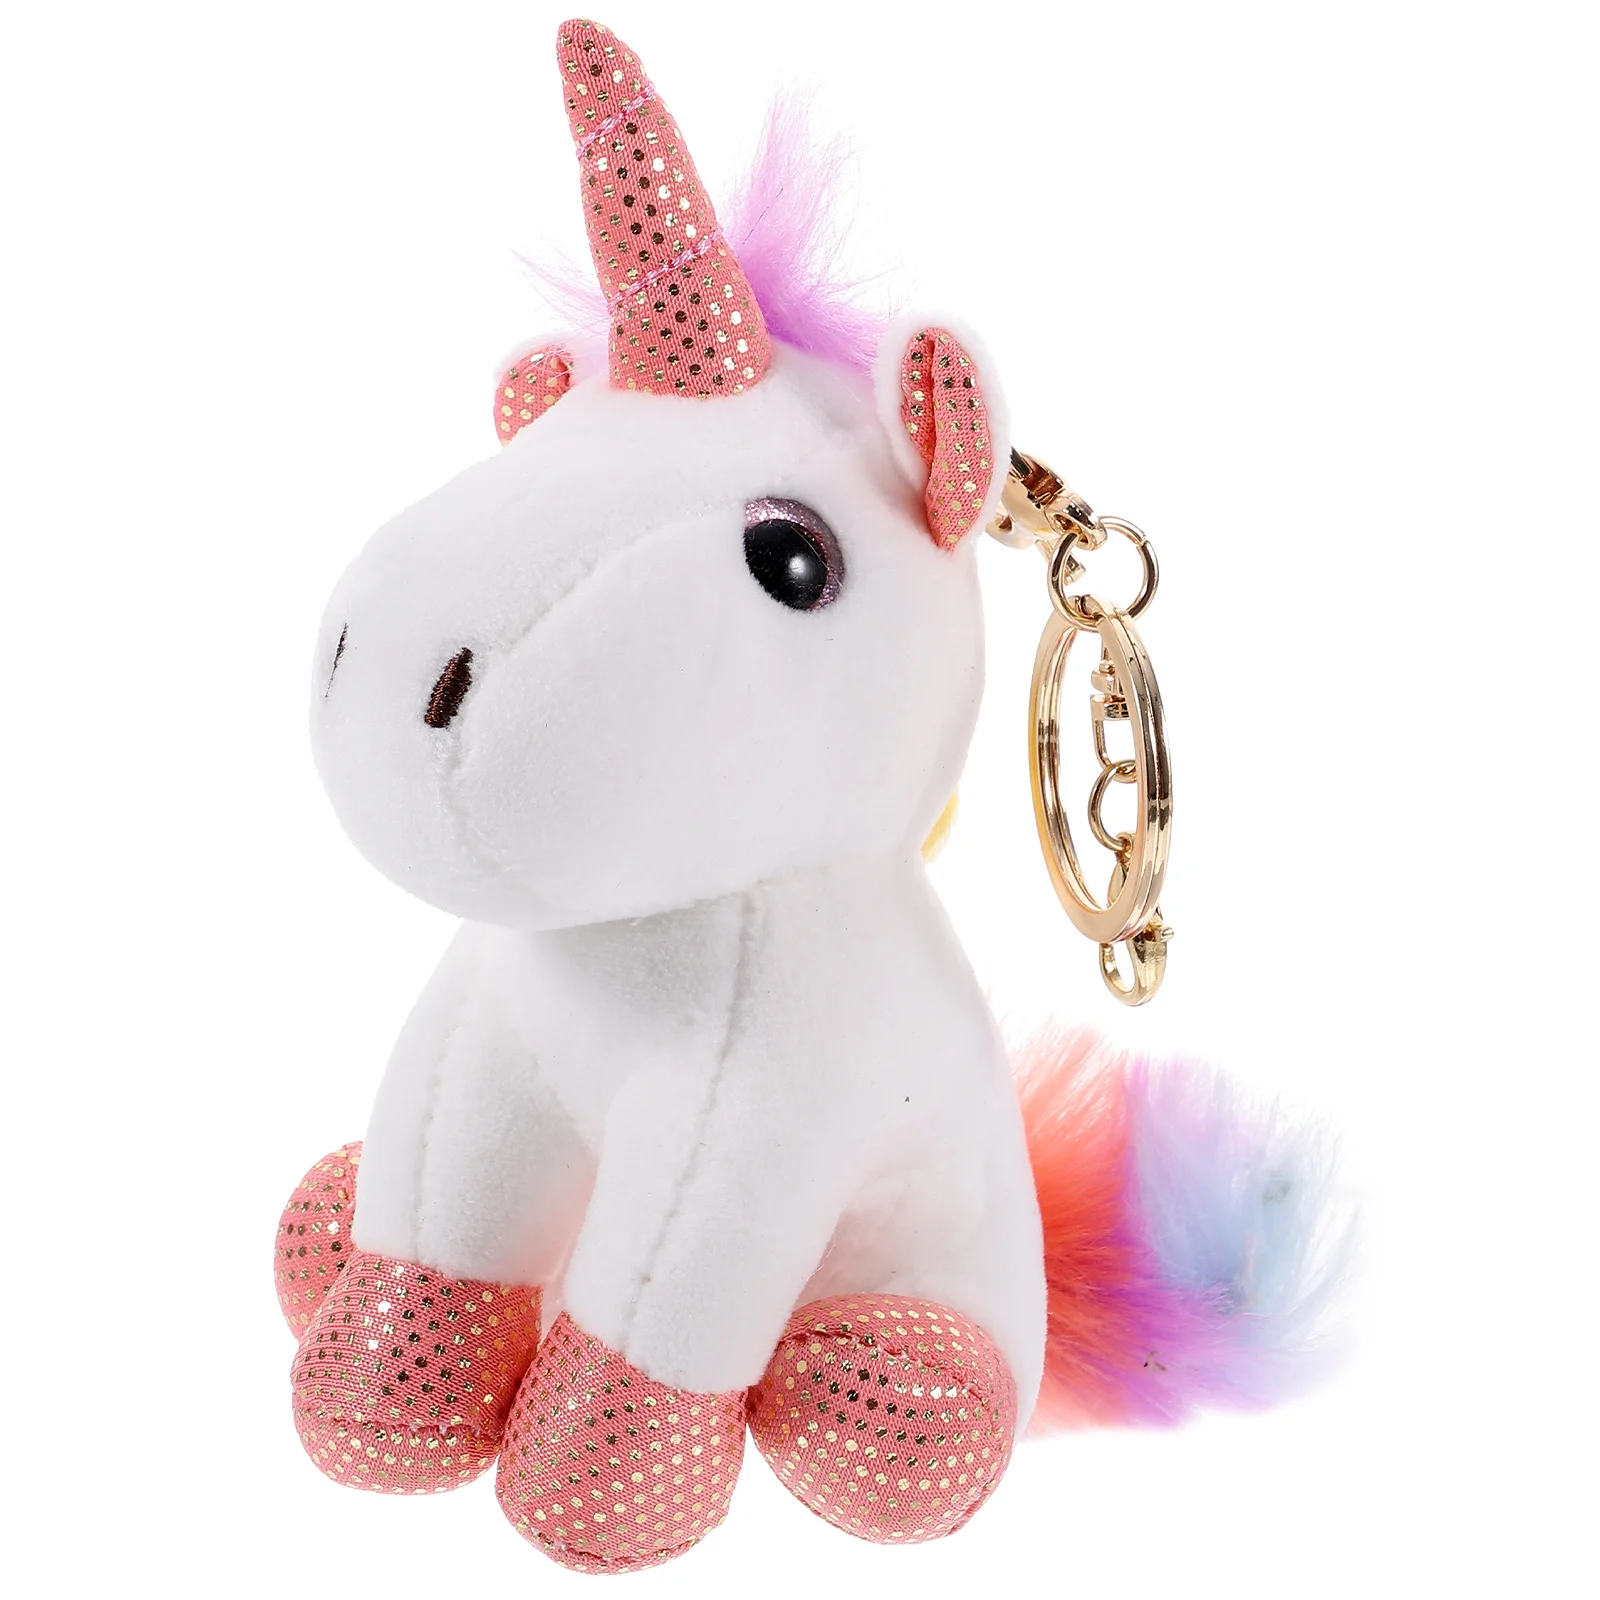 

Pony Plush Unicorn Toy Hanging Pendant Kidcraft Playset Kids Cute Adorable Keyring Keychain